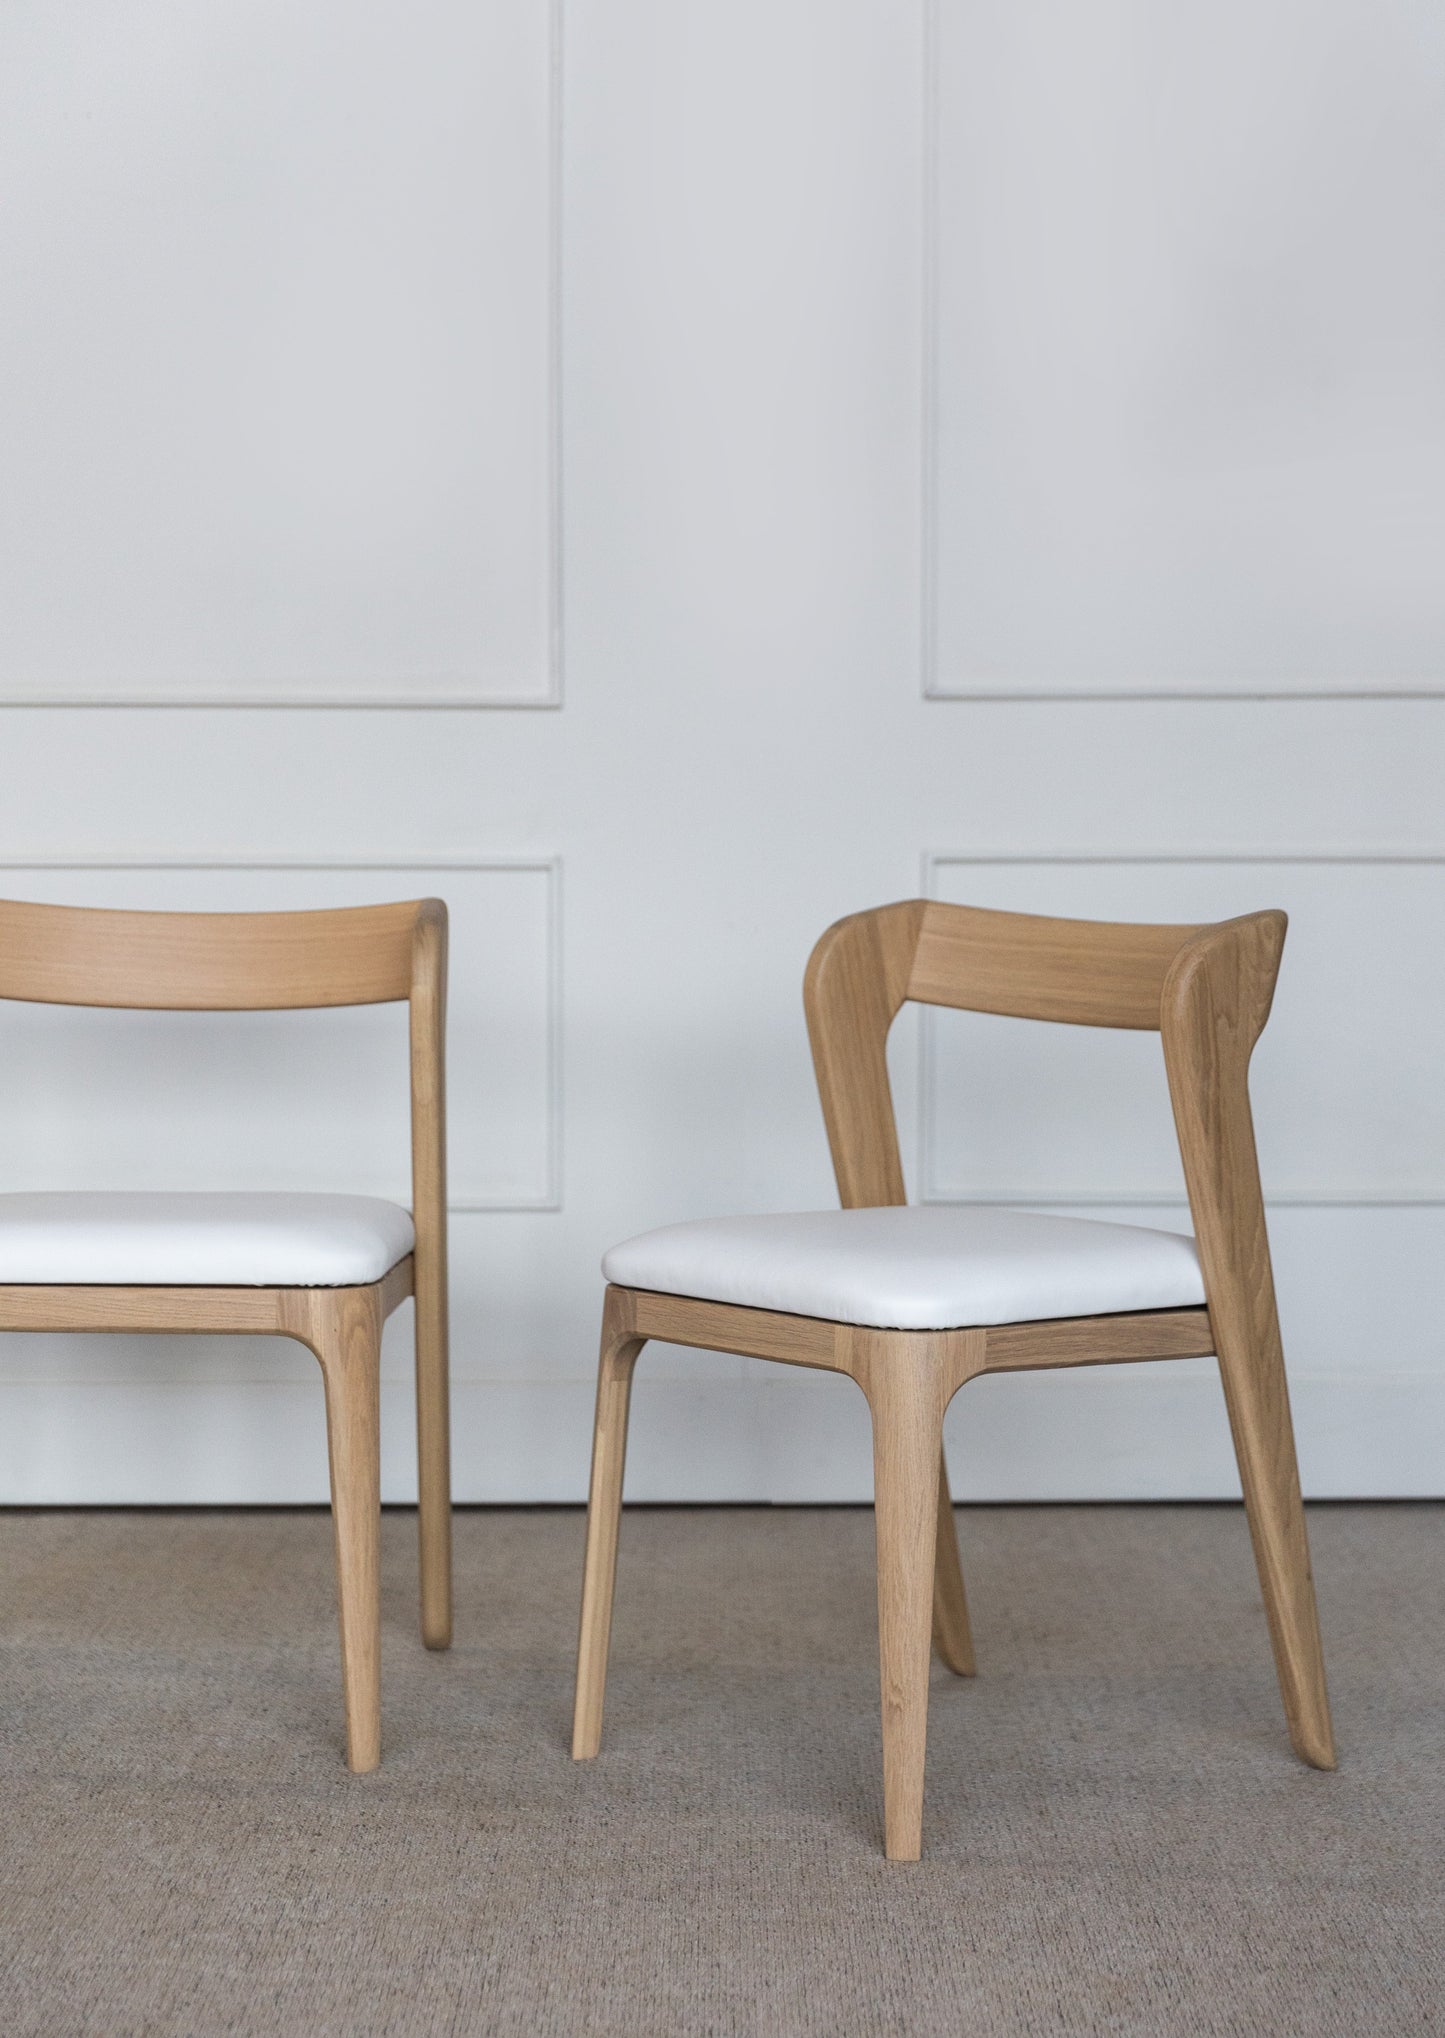 Stolen Vera er håndlaget i heltre eik som har elegant eikmønster. Sittedelen er laget av naturlig skinn. Denne solide stolen vil finne sin plass både i spisestue, kjøkken, arbeidsrom og soverom.